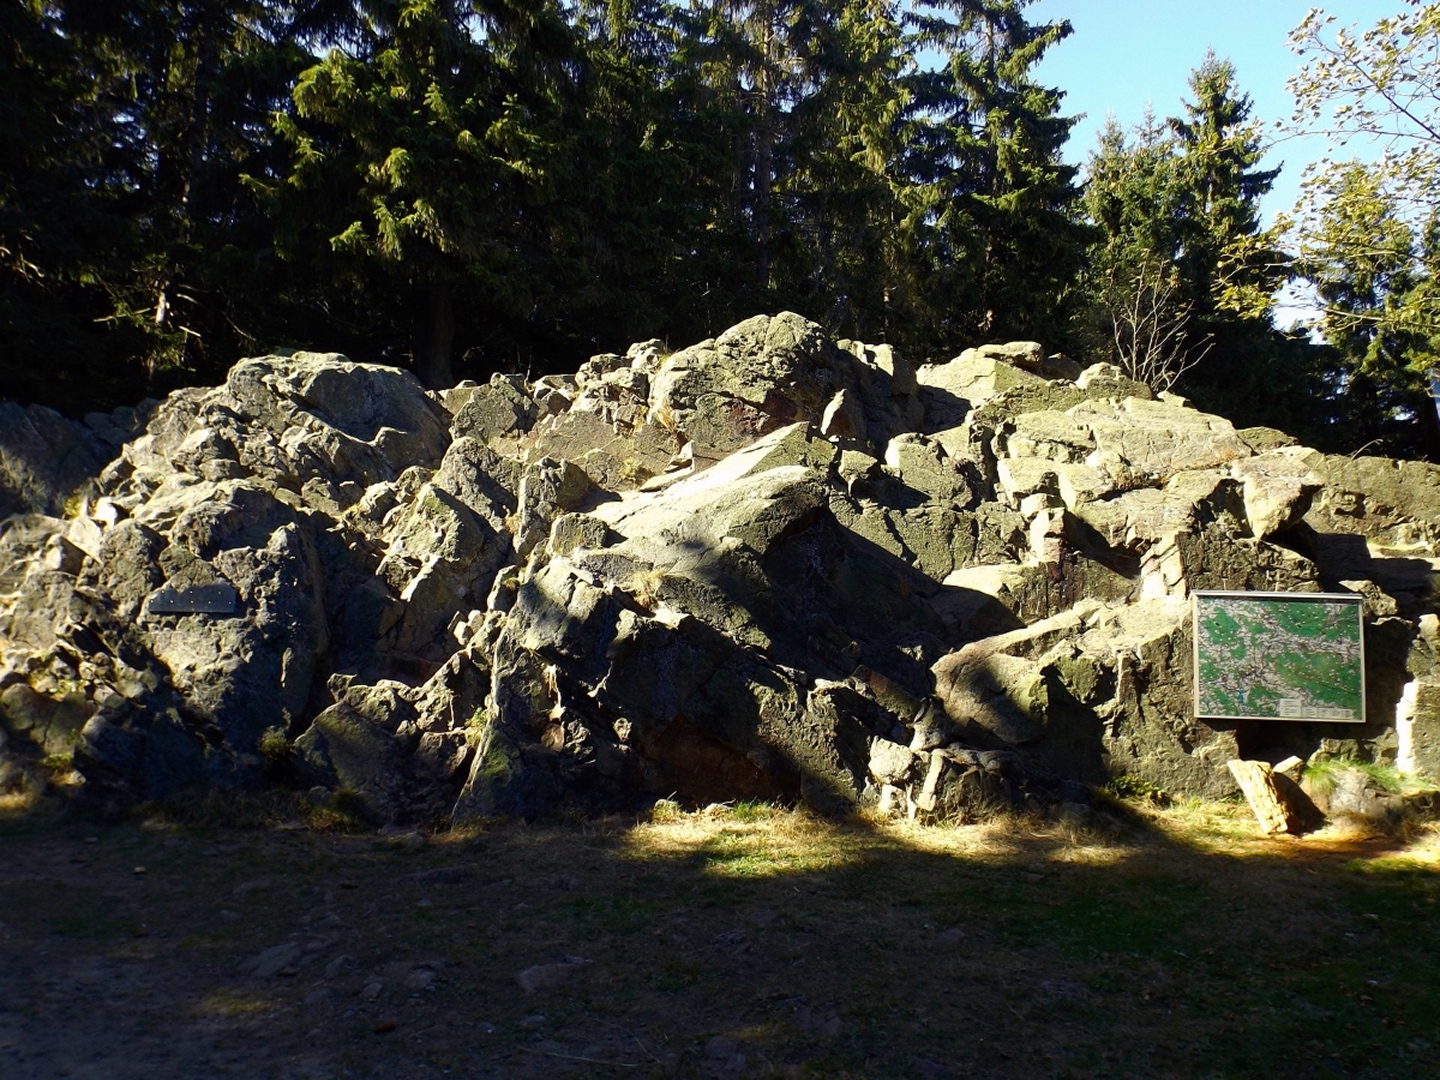 Warum das 12-Tausender-Taferl an diesem Fels hängt, weiß ich auch nicht. Er liegt halt direkt am Weg